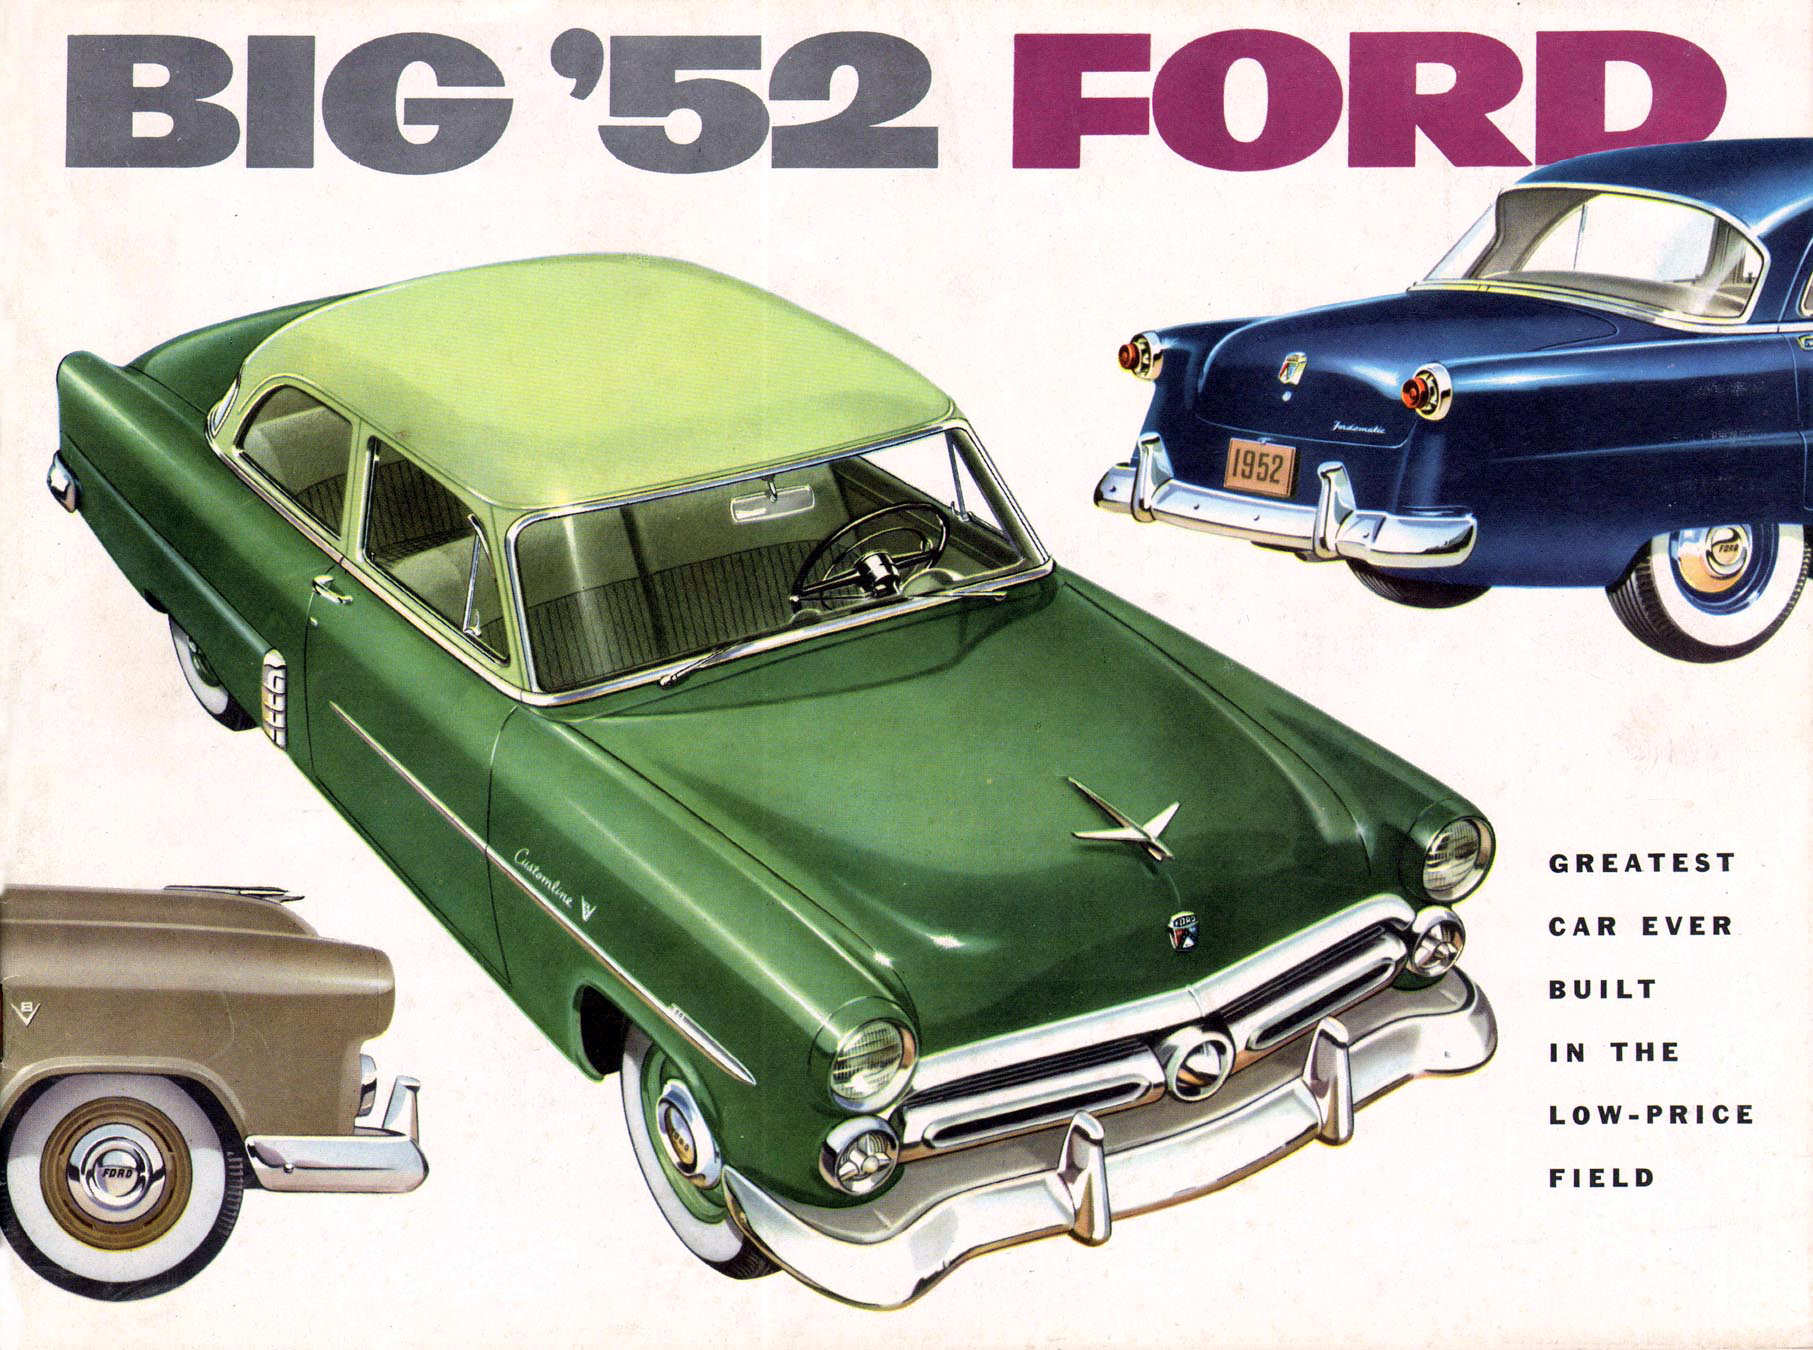 1952_Ford_Full_Line_Rev-01